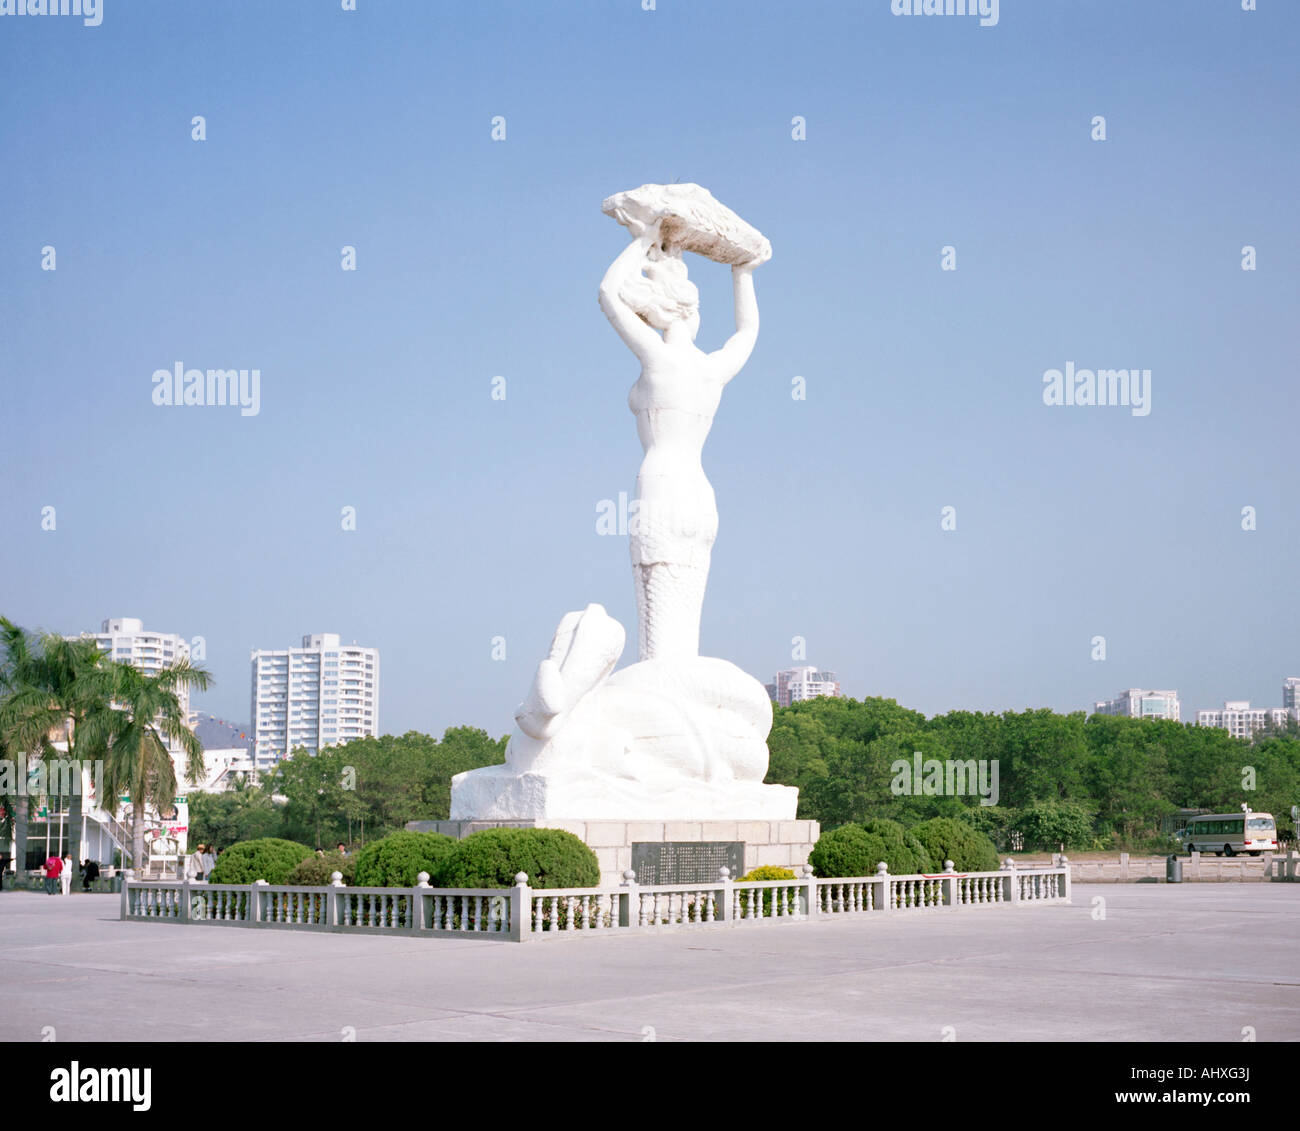 Mermaid statue in Shekou, Shenzhen, China Stock Photo